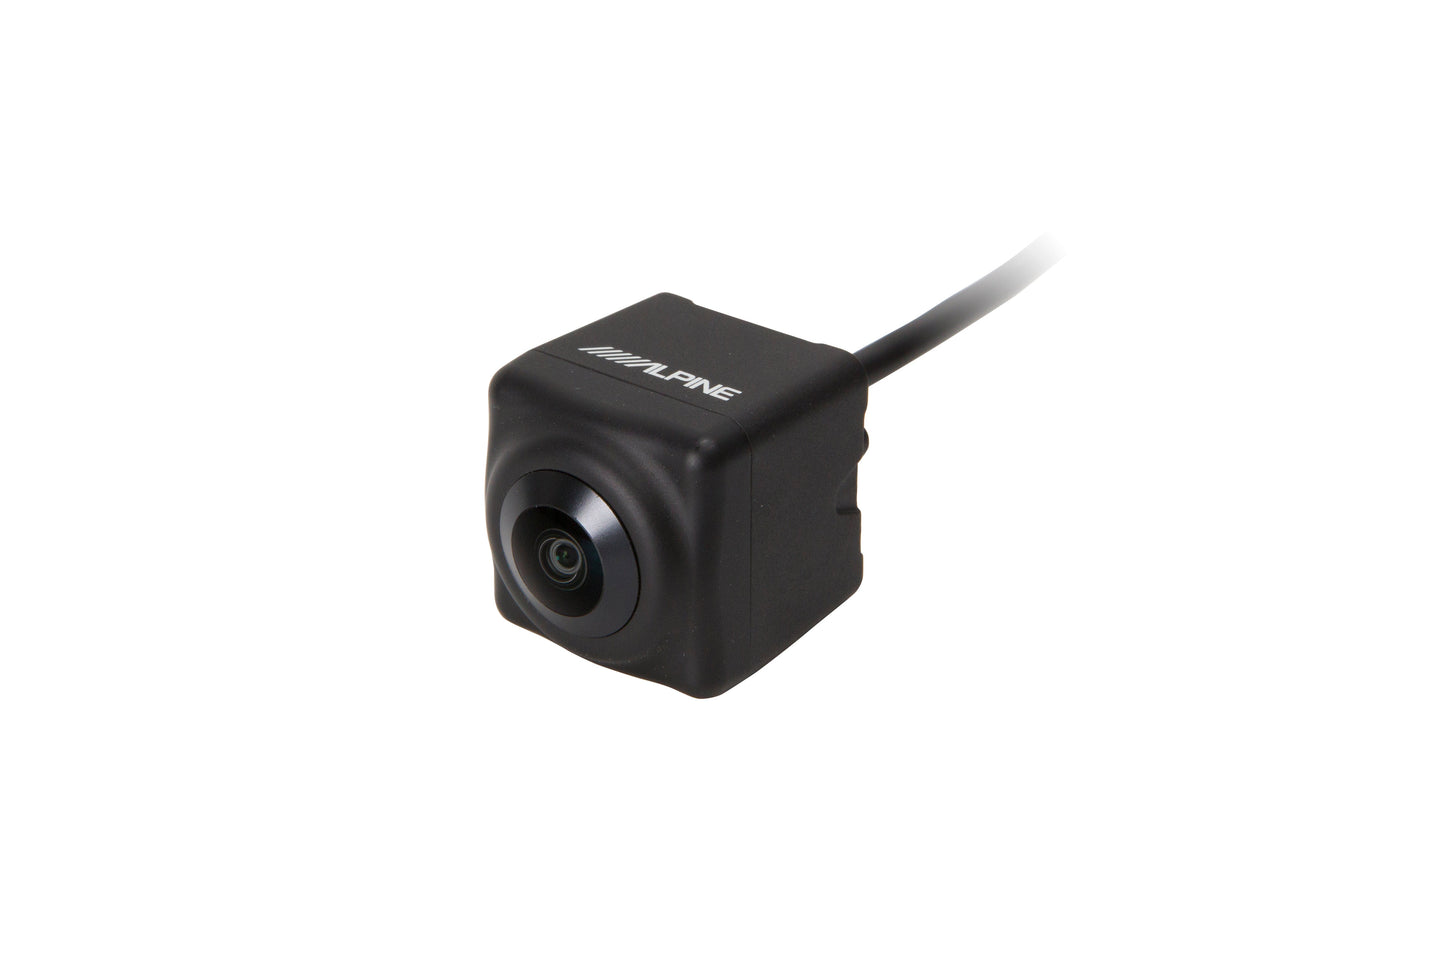 Open Box: Alpine Multi-View HDR Front Camera (HCE-C2600FD)